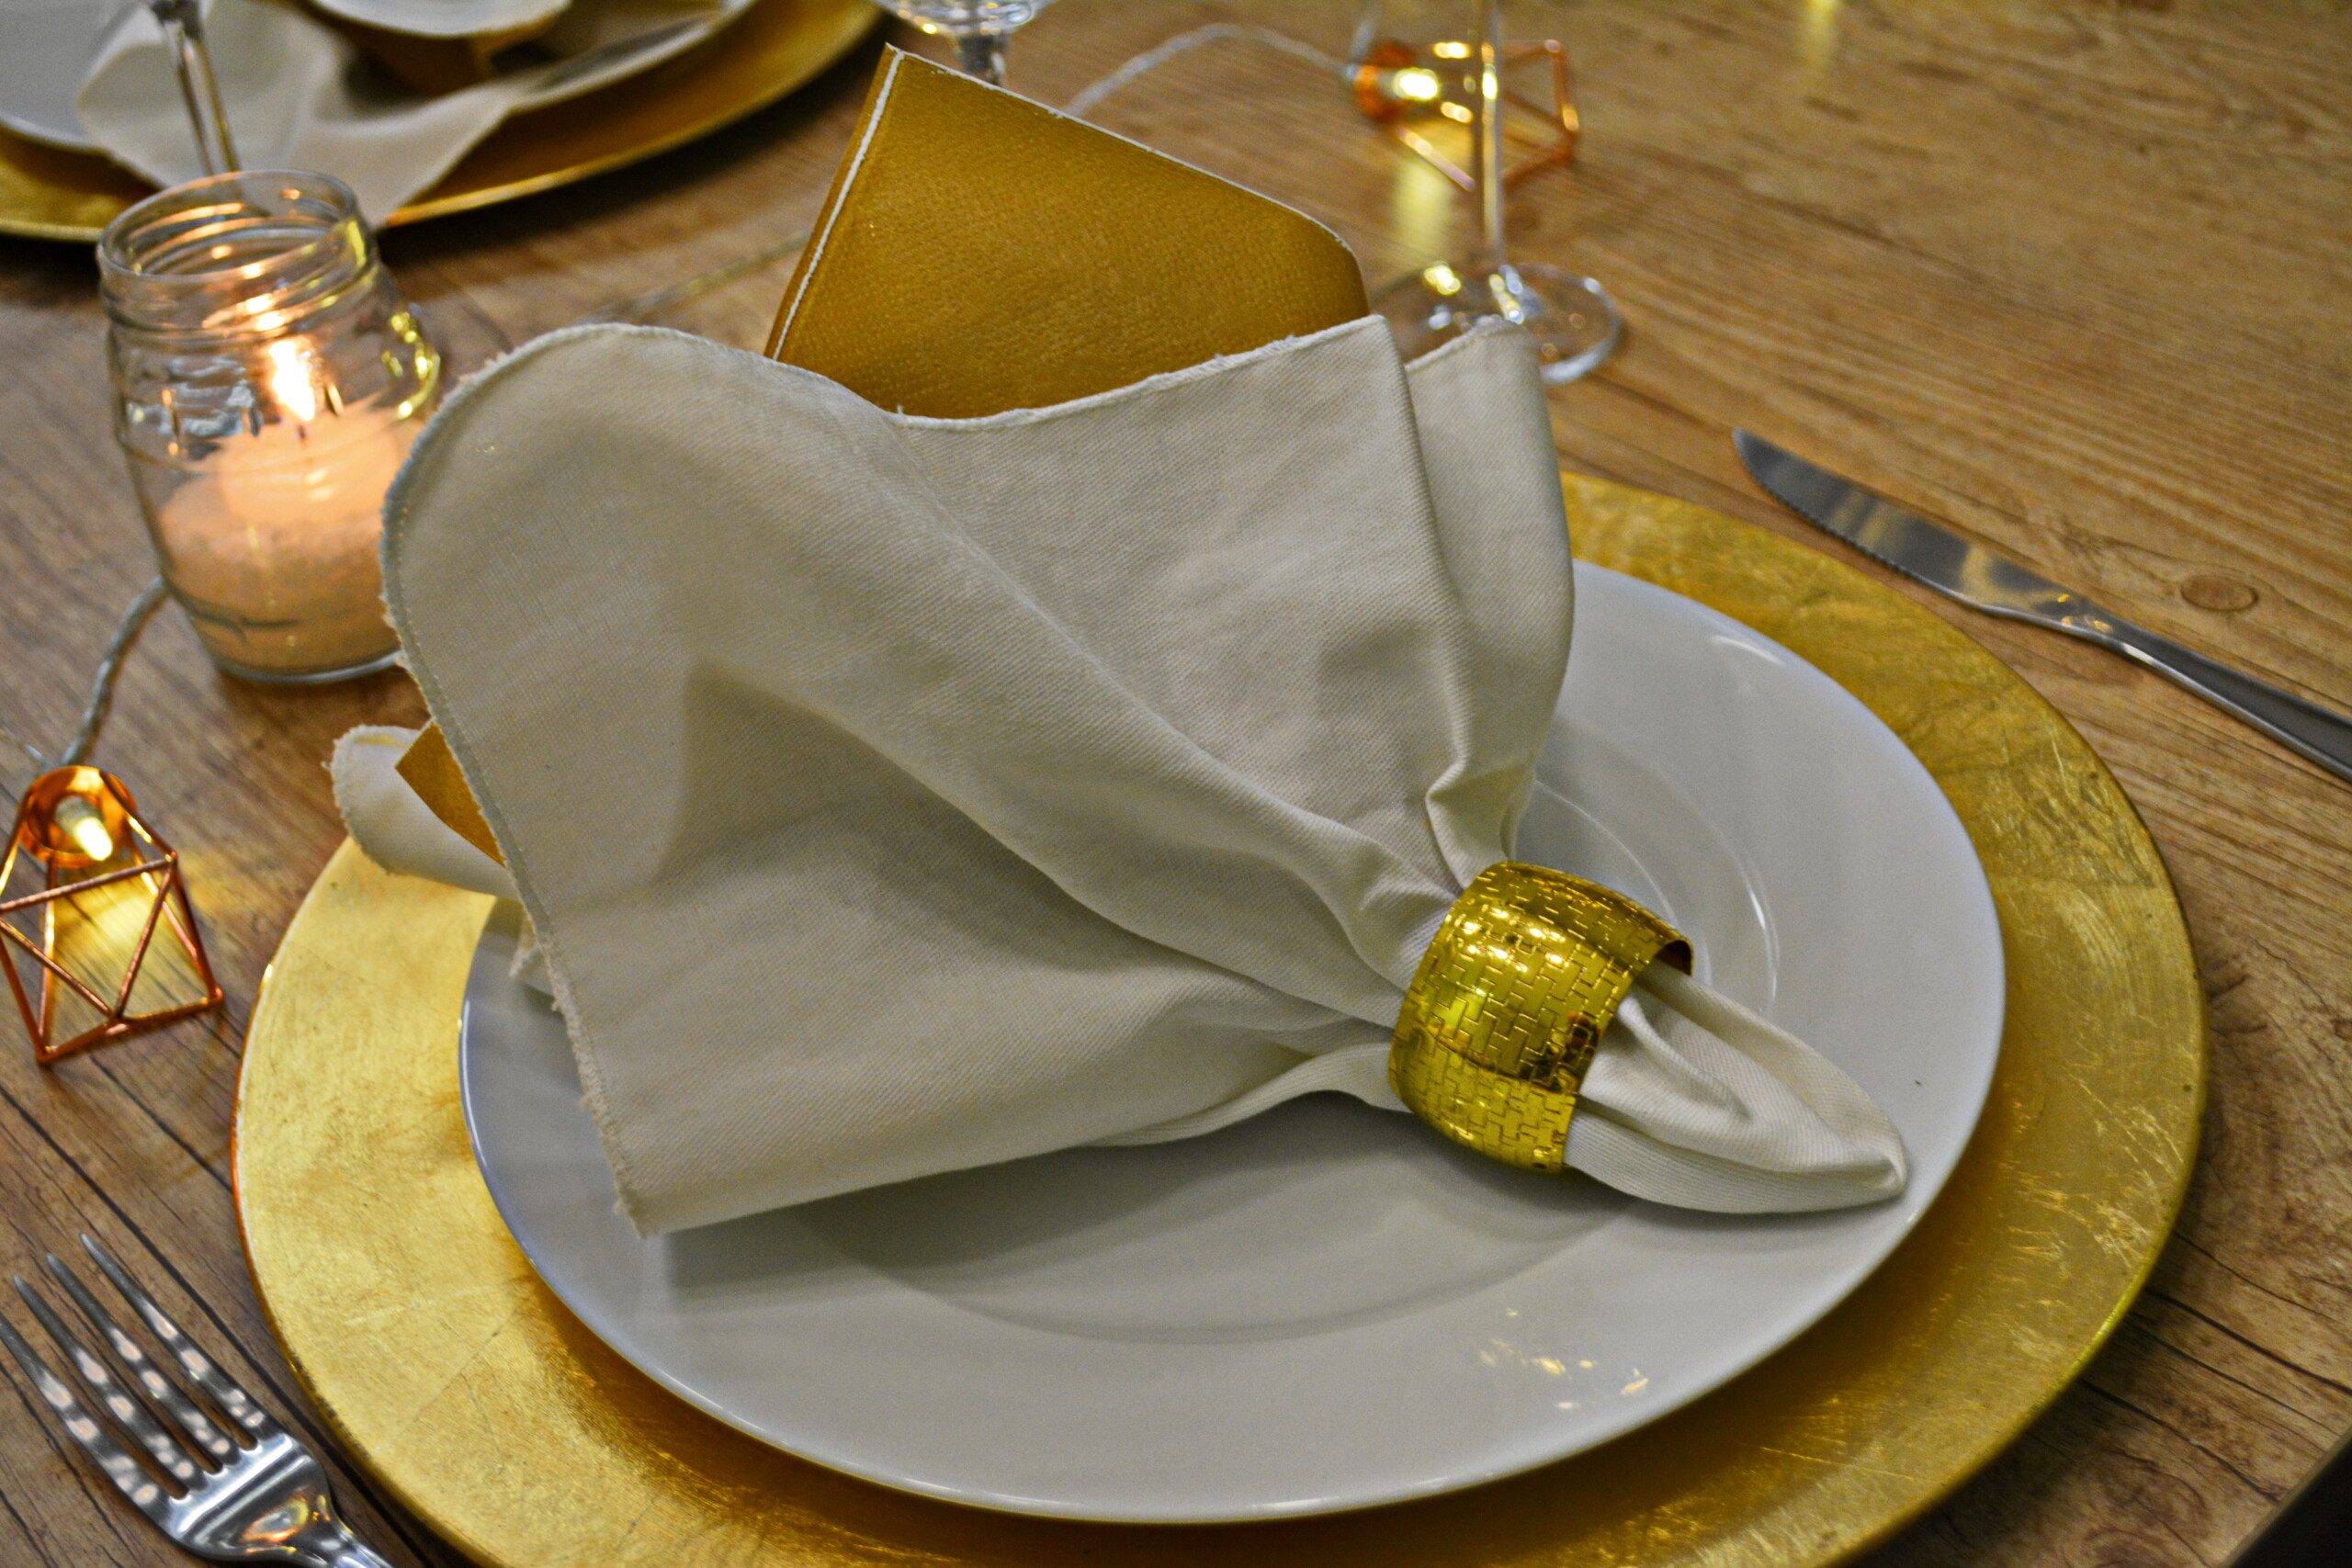 Sousplat em alumínio dourado, prato e guardanapo de tecido branco com argola dourada. 